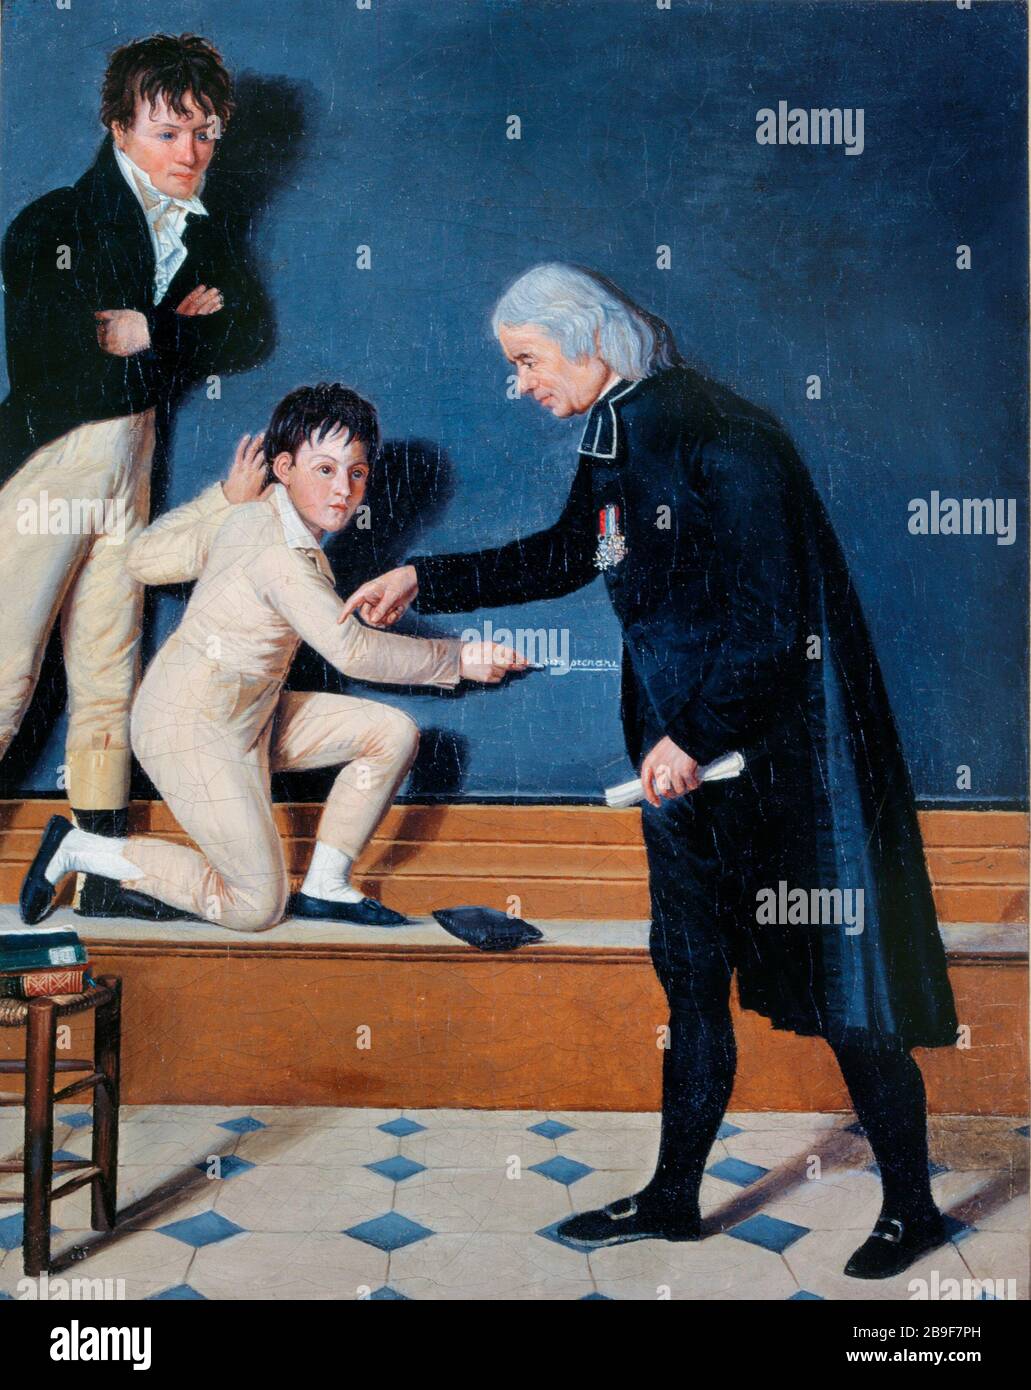 Vater Sicard belehrend taube Mutungen D'après Jérôme Langlois (1779-1838). "L'Abbé Sicard (1742-1822) instruisant les Saurets". Huile sur toile. Paris, musée Carnavalet. Stockfoto